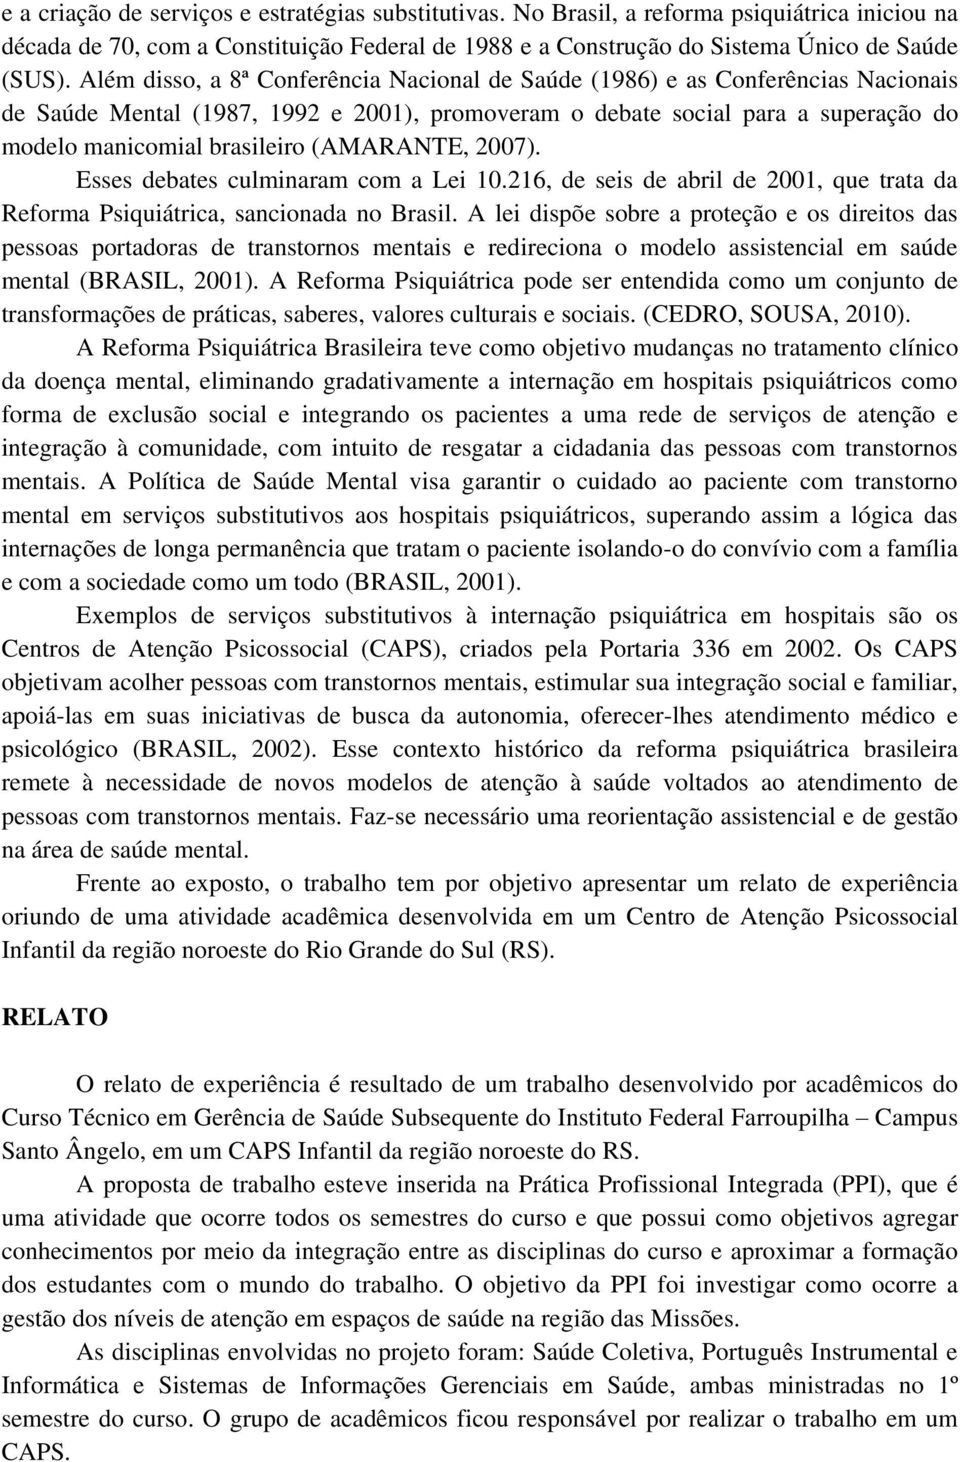 (AMARANTE, 2007). Esses debates culminaram com a Lei 10.216, de seis de abril de 2001, que trata da Reforma Psiquiátrica, sancionada no Brasil.